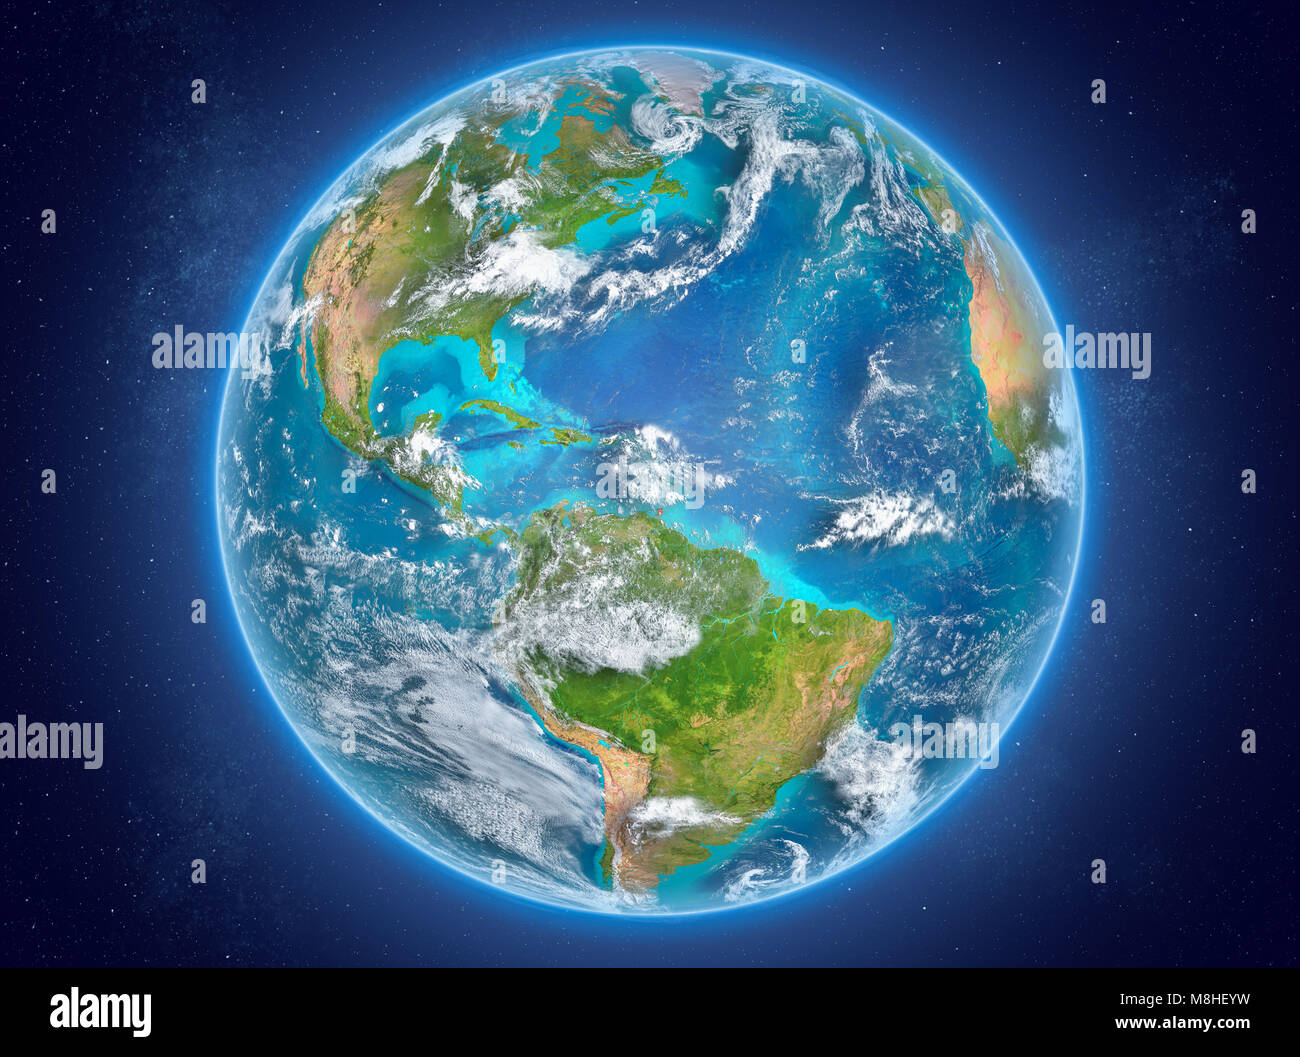 Caraïbes en rouge sur le modèle de la planète Terre avec des nuages et l'atmosphère dans l'espace. 3D illustration. Éléments de cette image fournie par la NASA. Banque D'Images